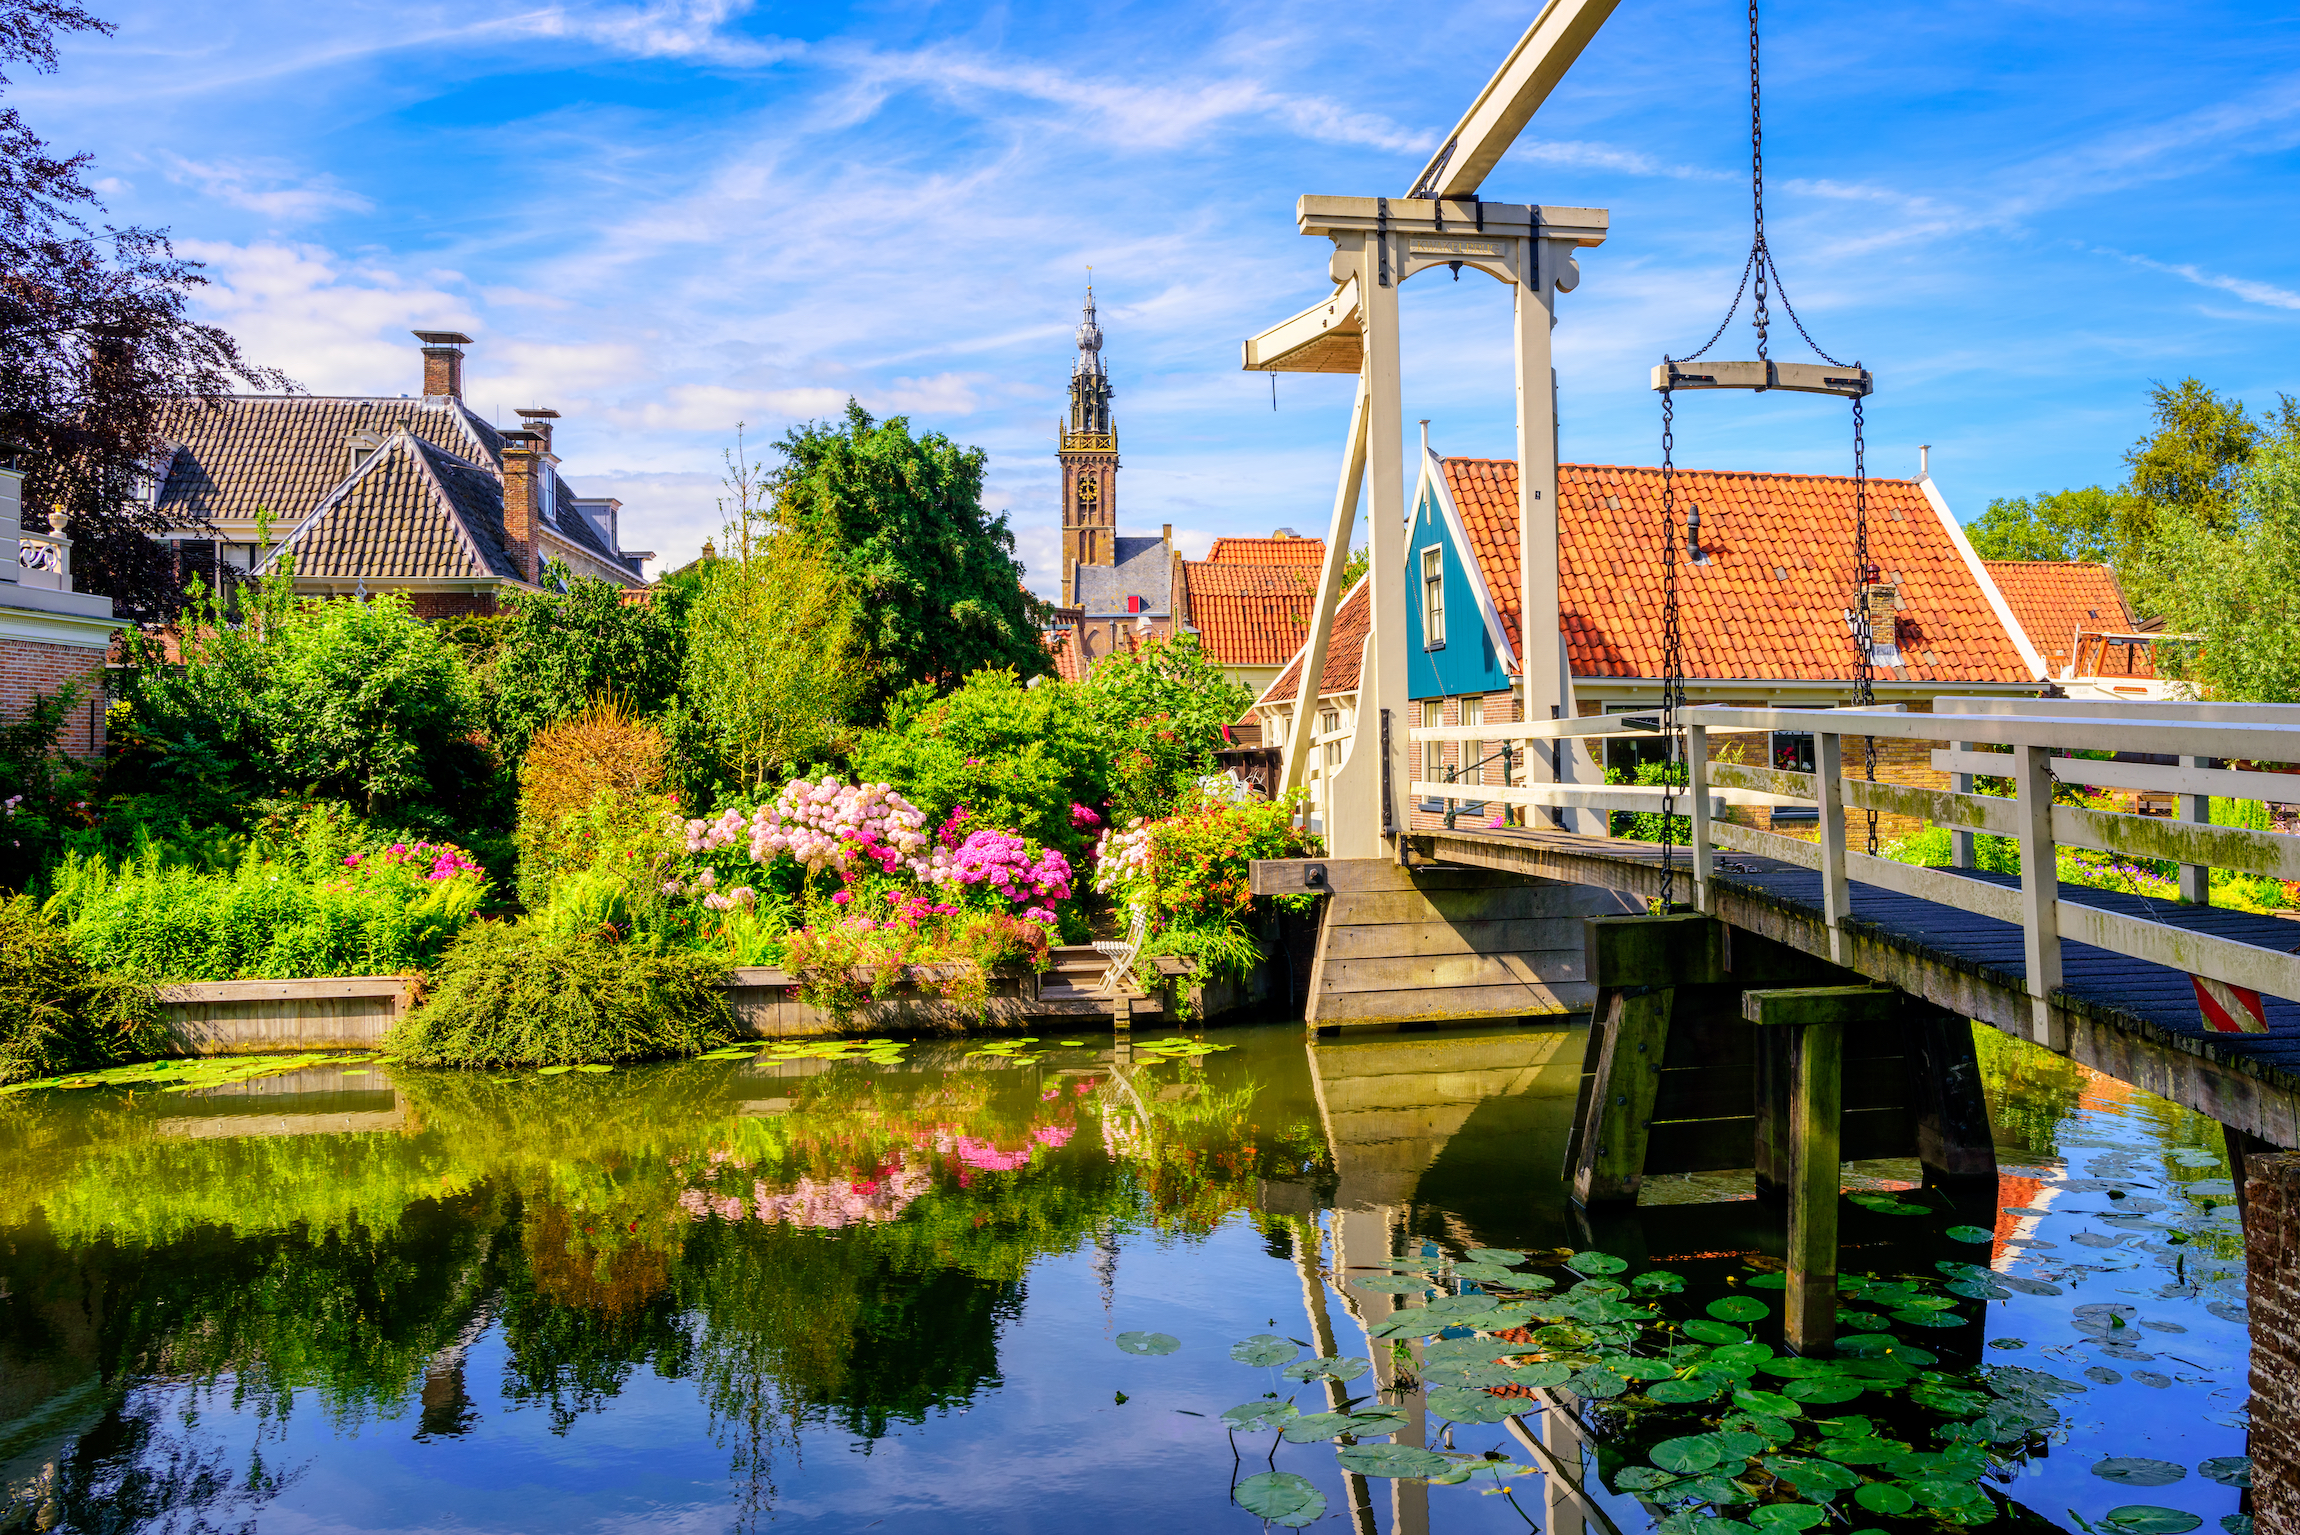 Miasto Edam w Holandii Północnej, widok na zabytkowy drewniany most Kwakelbrug i tradycyjne domy w centrum starego miasta